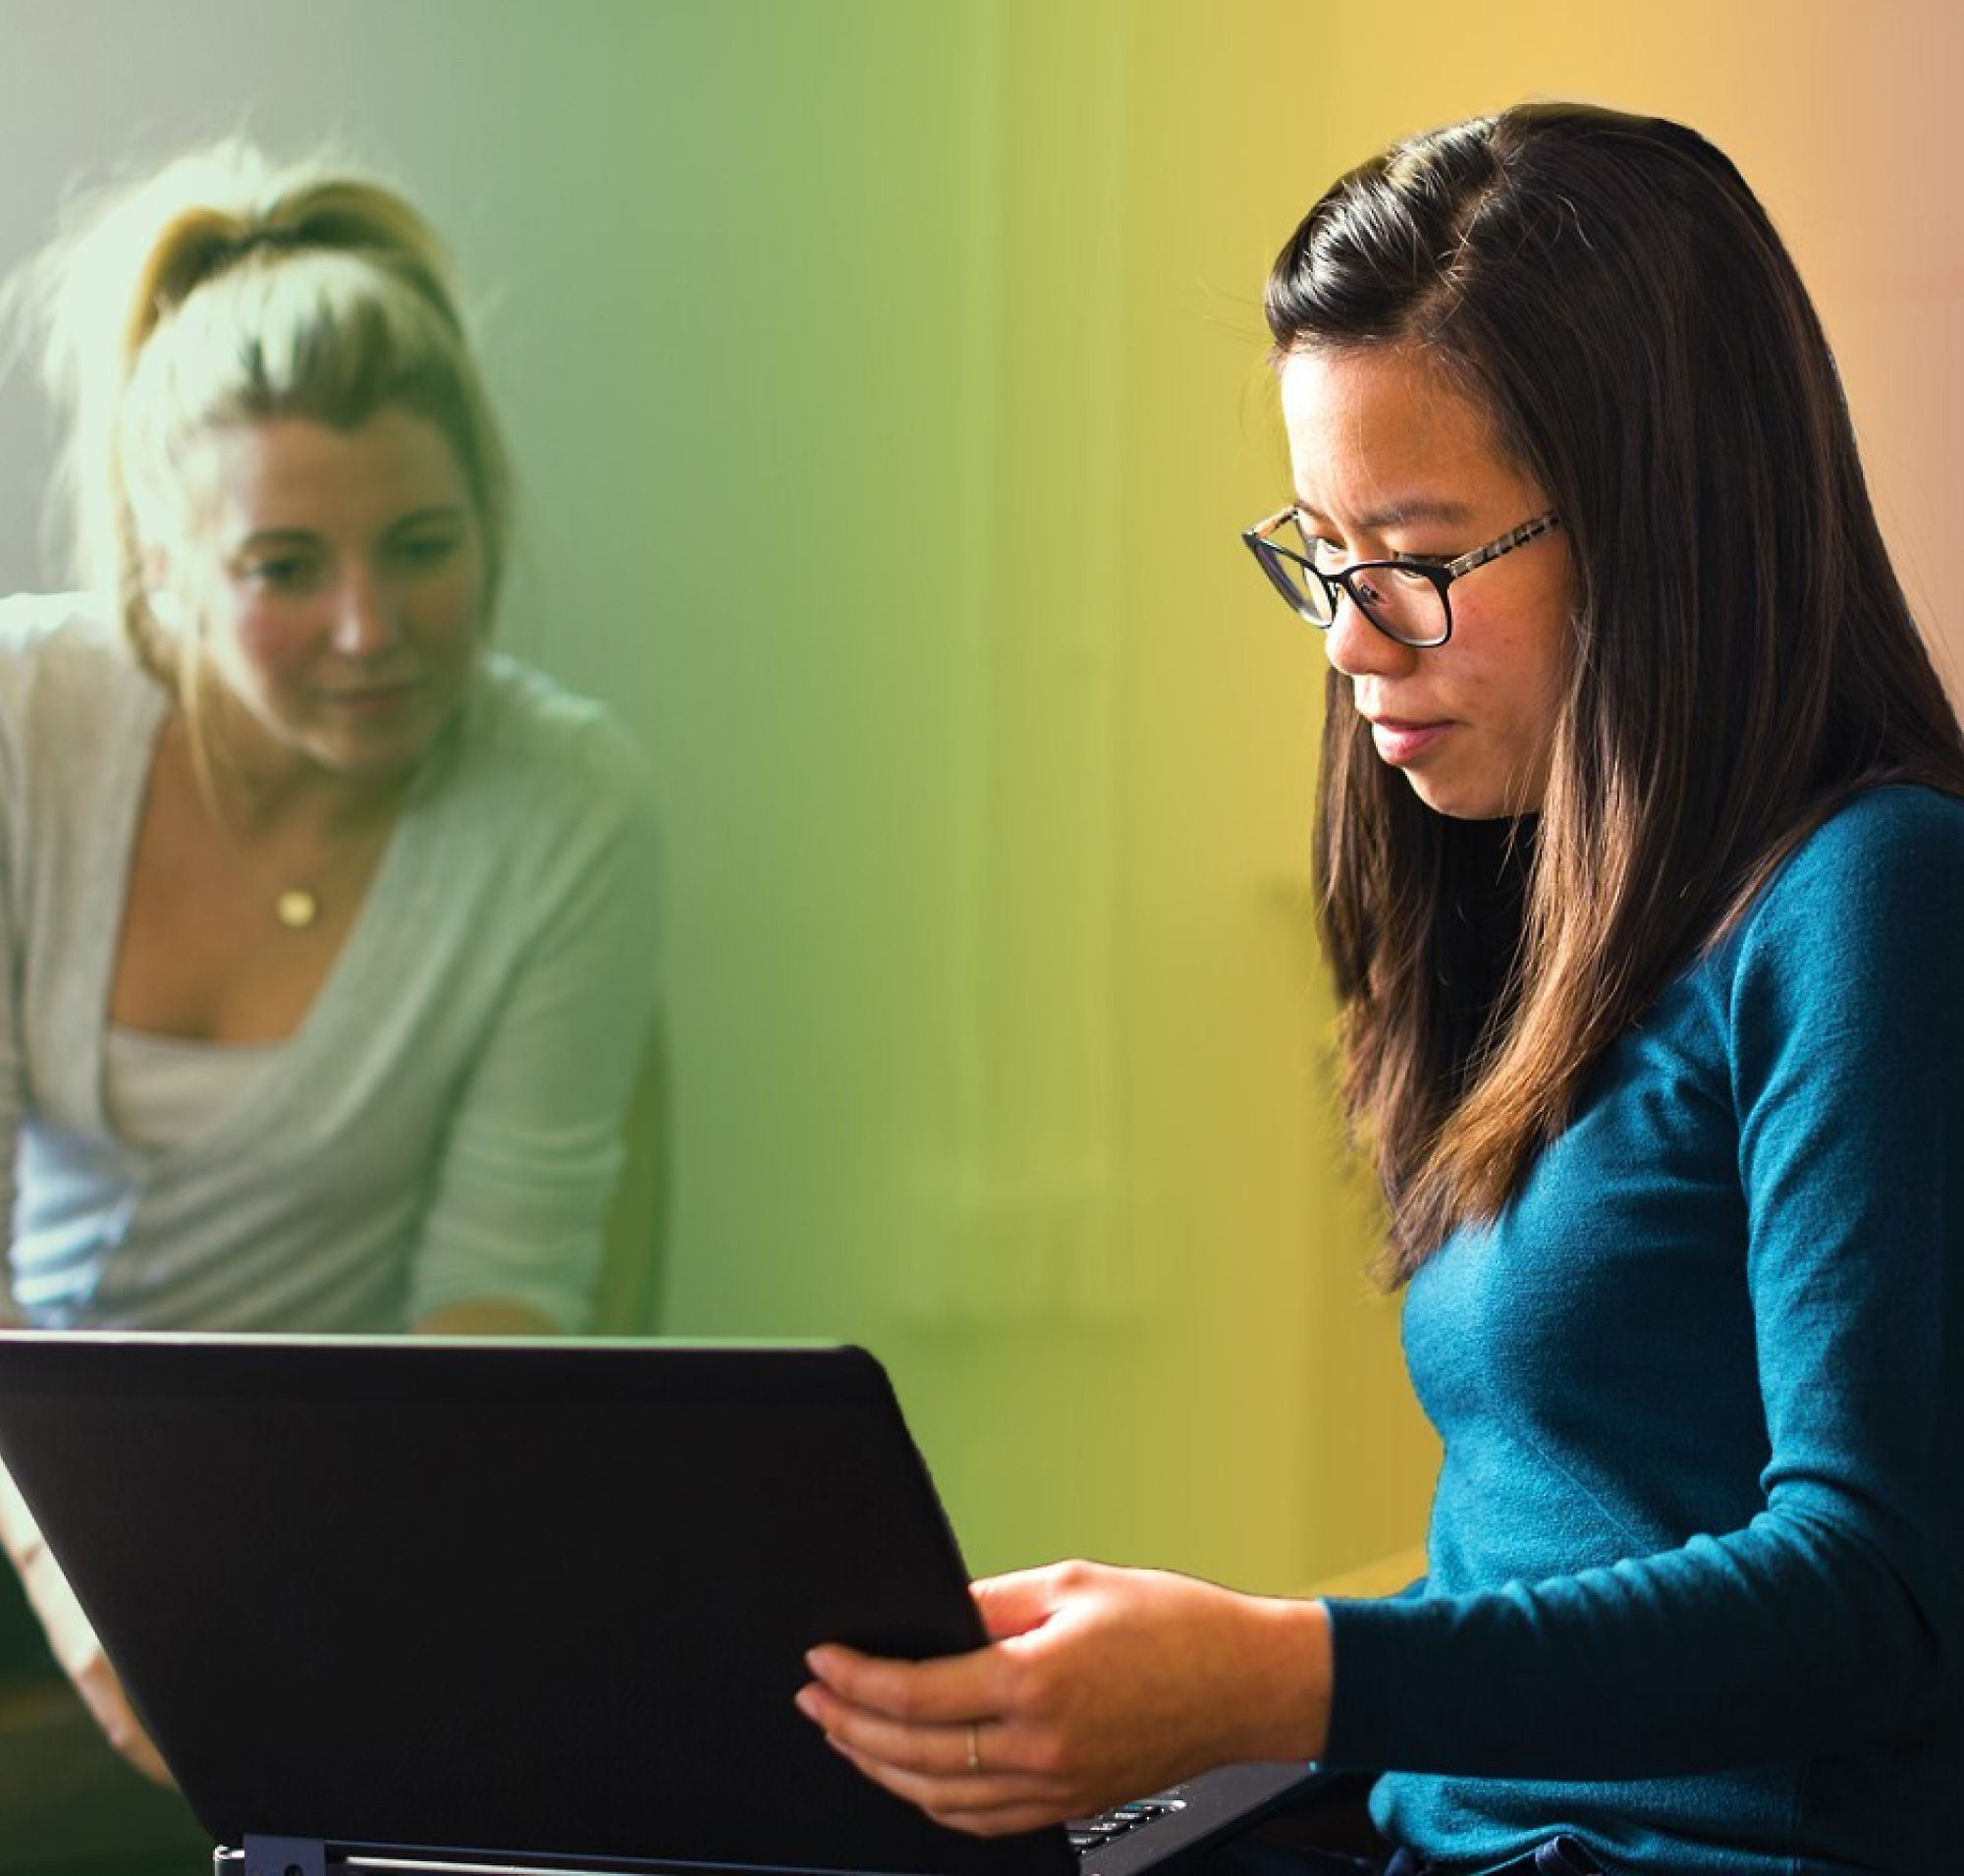 两个女人，一个留着金发，另一个戴着眼镜，在一个五颜六色的房间里一起用笔记本电脑工作。